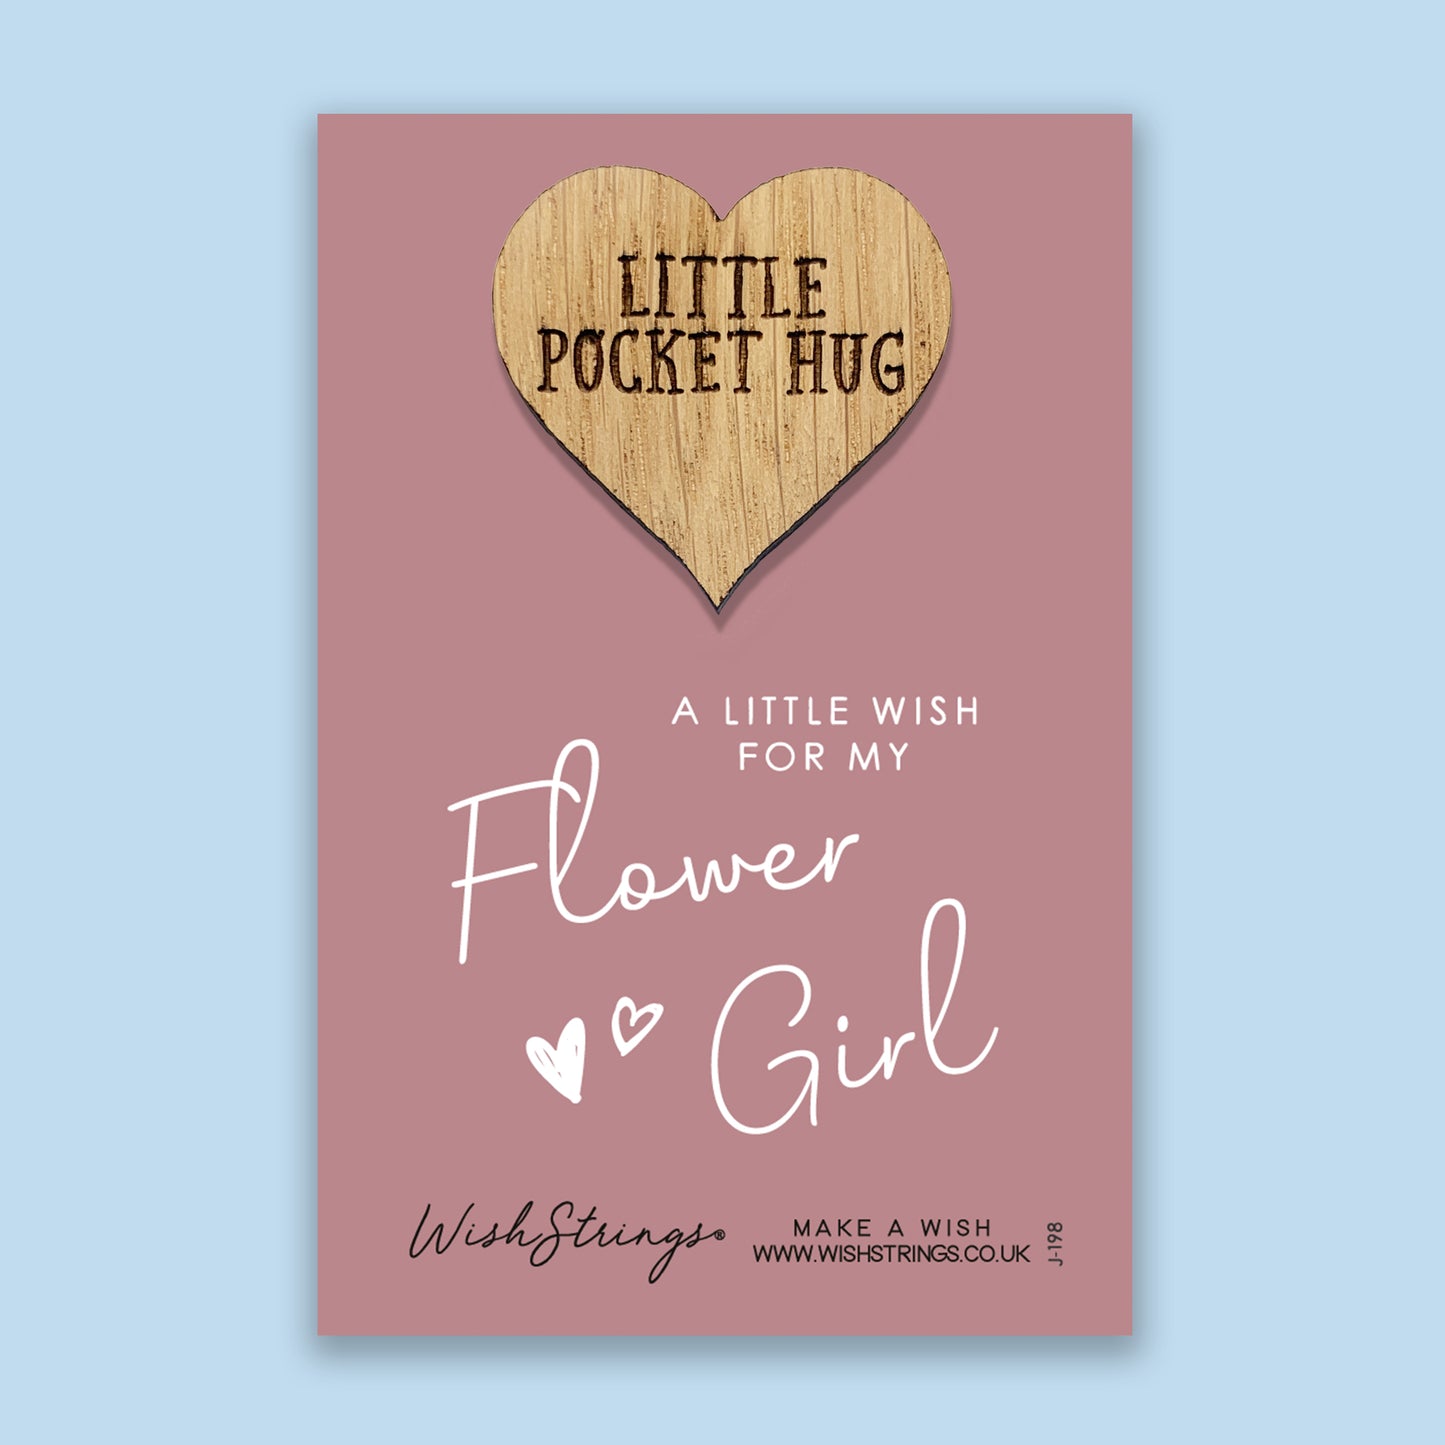 Flower Girl - Little Pocket Hug - Wooden Heart Keepsake Token